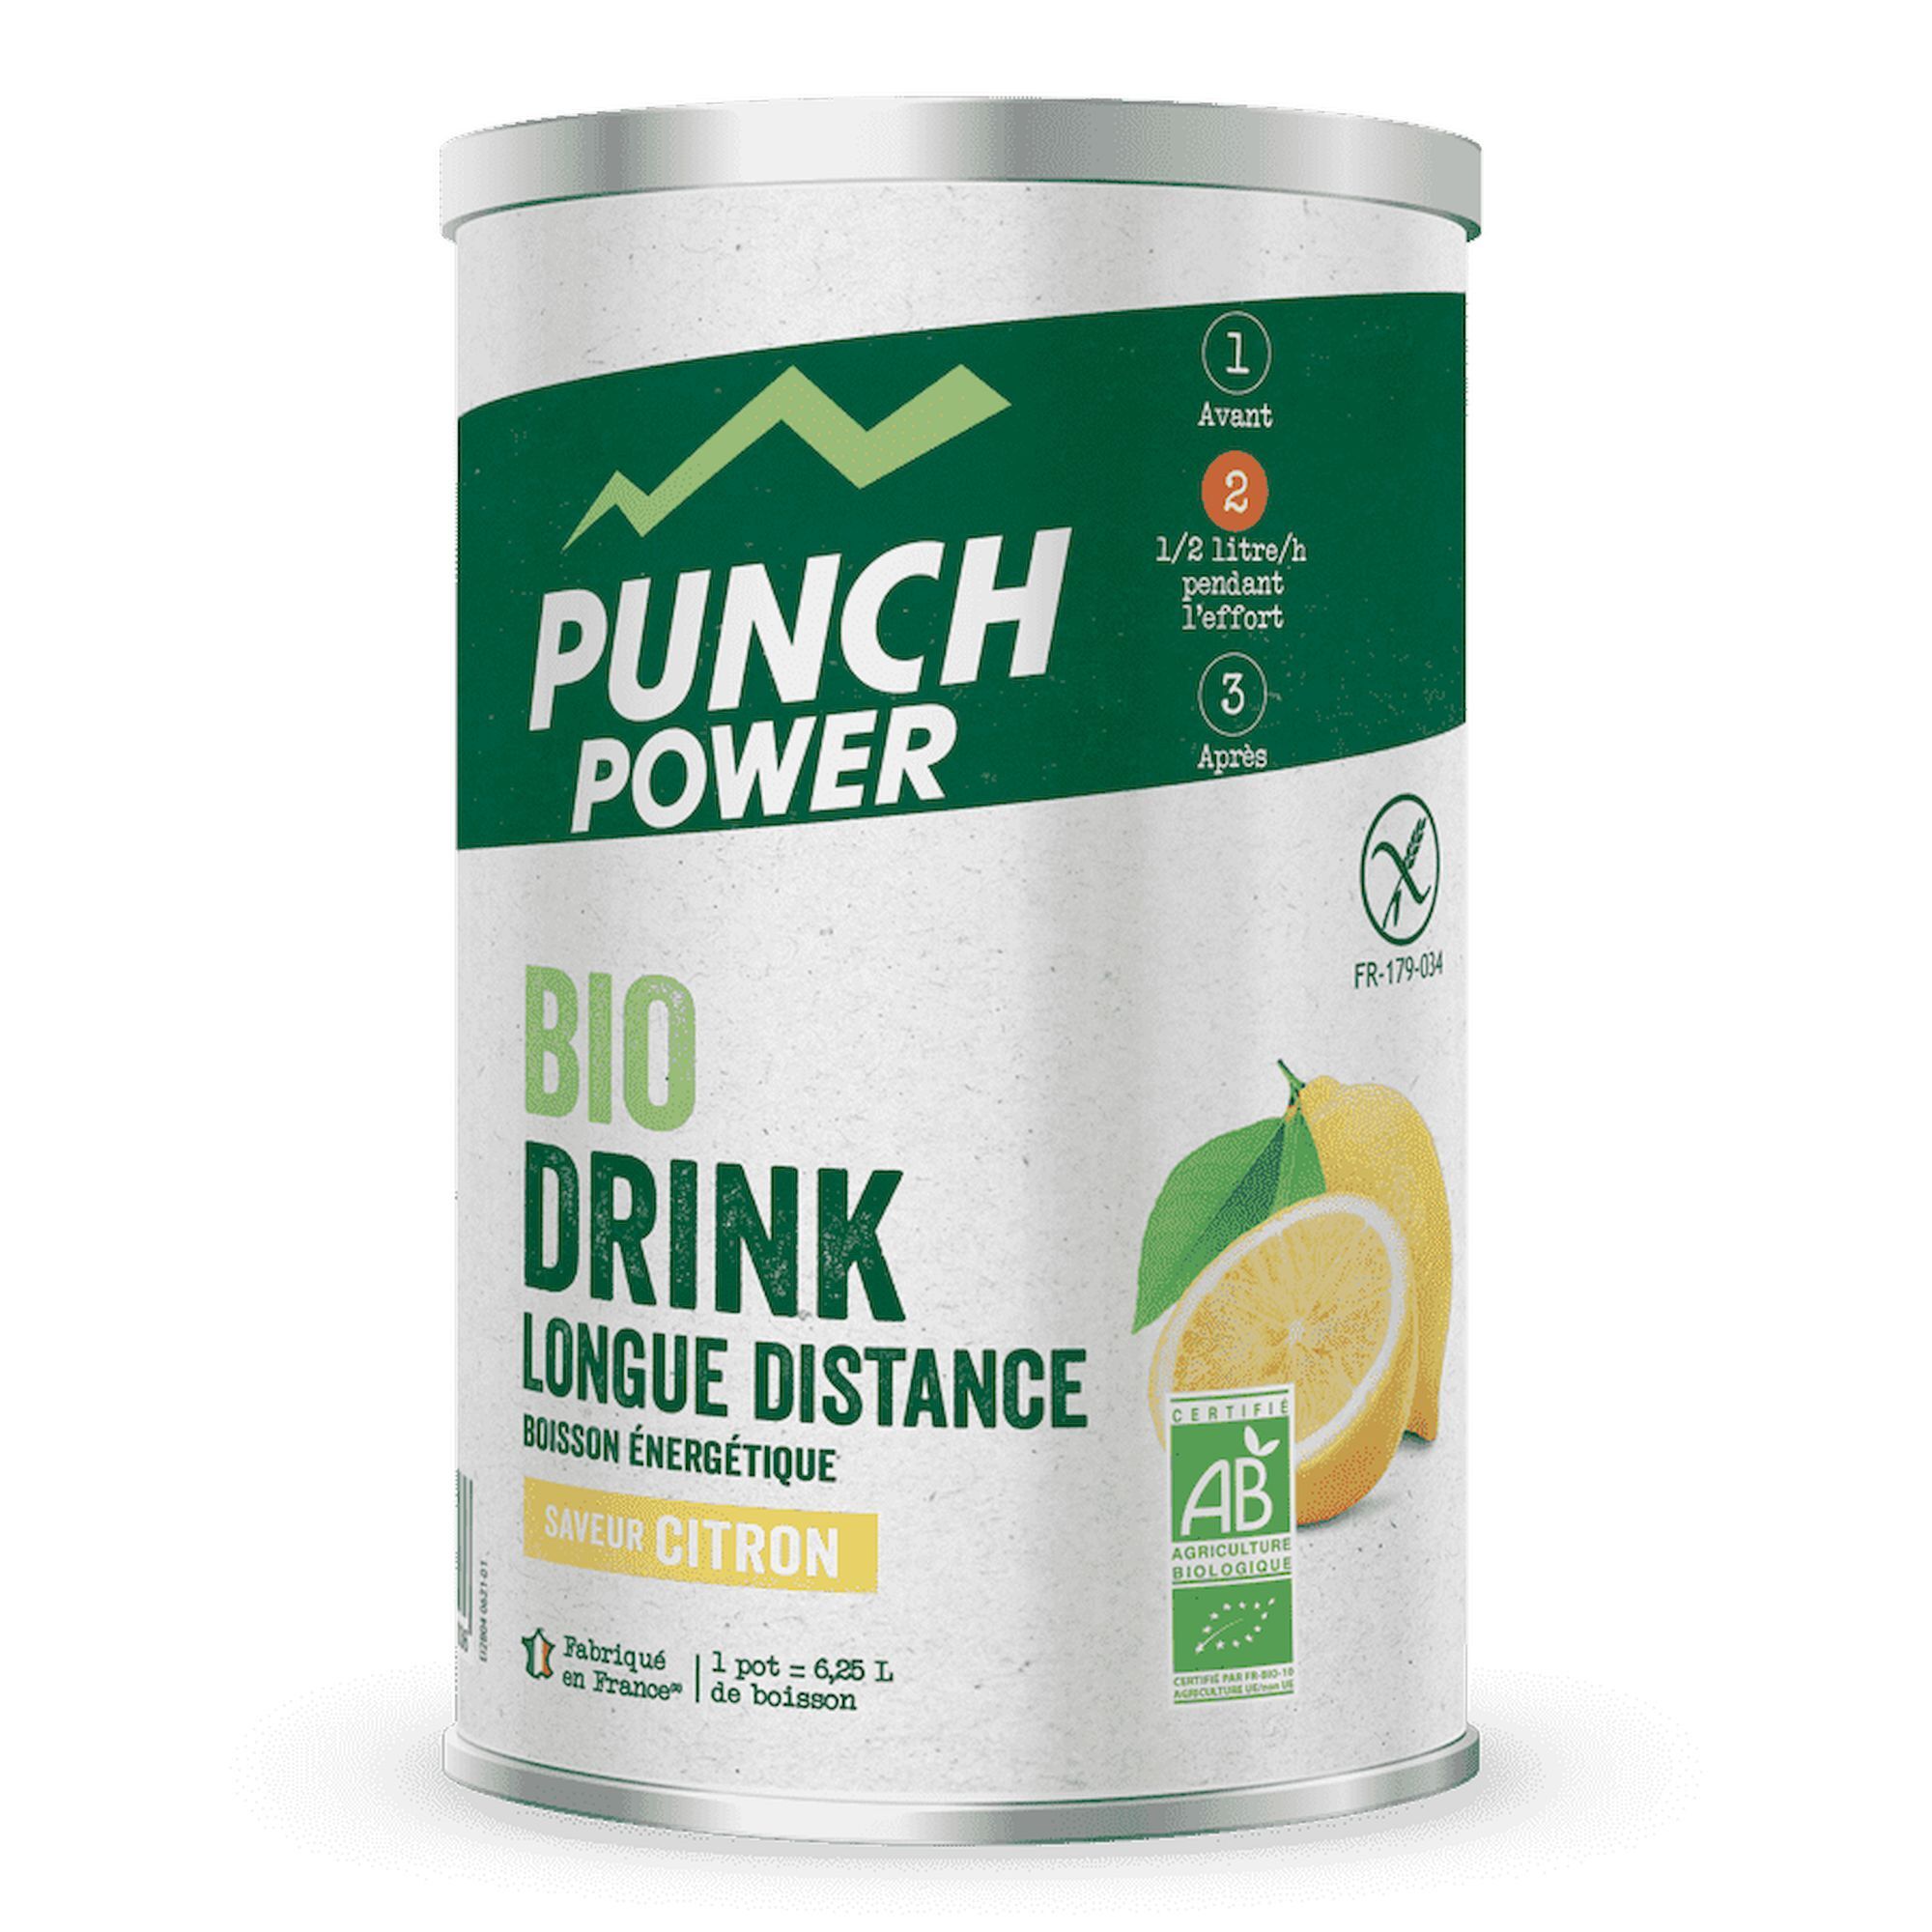 Punch Power - Boisson énergétique longue distance antioxydant Citron 500g